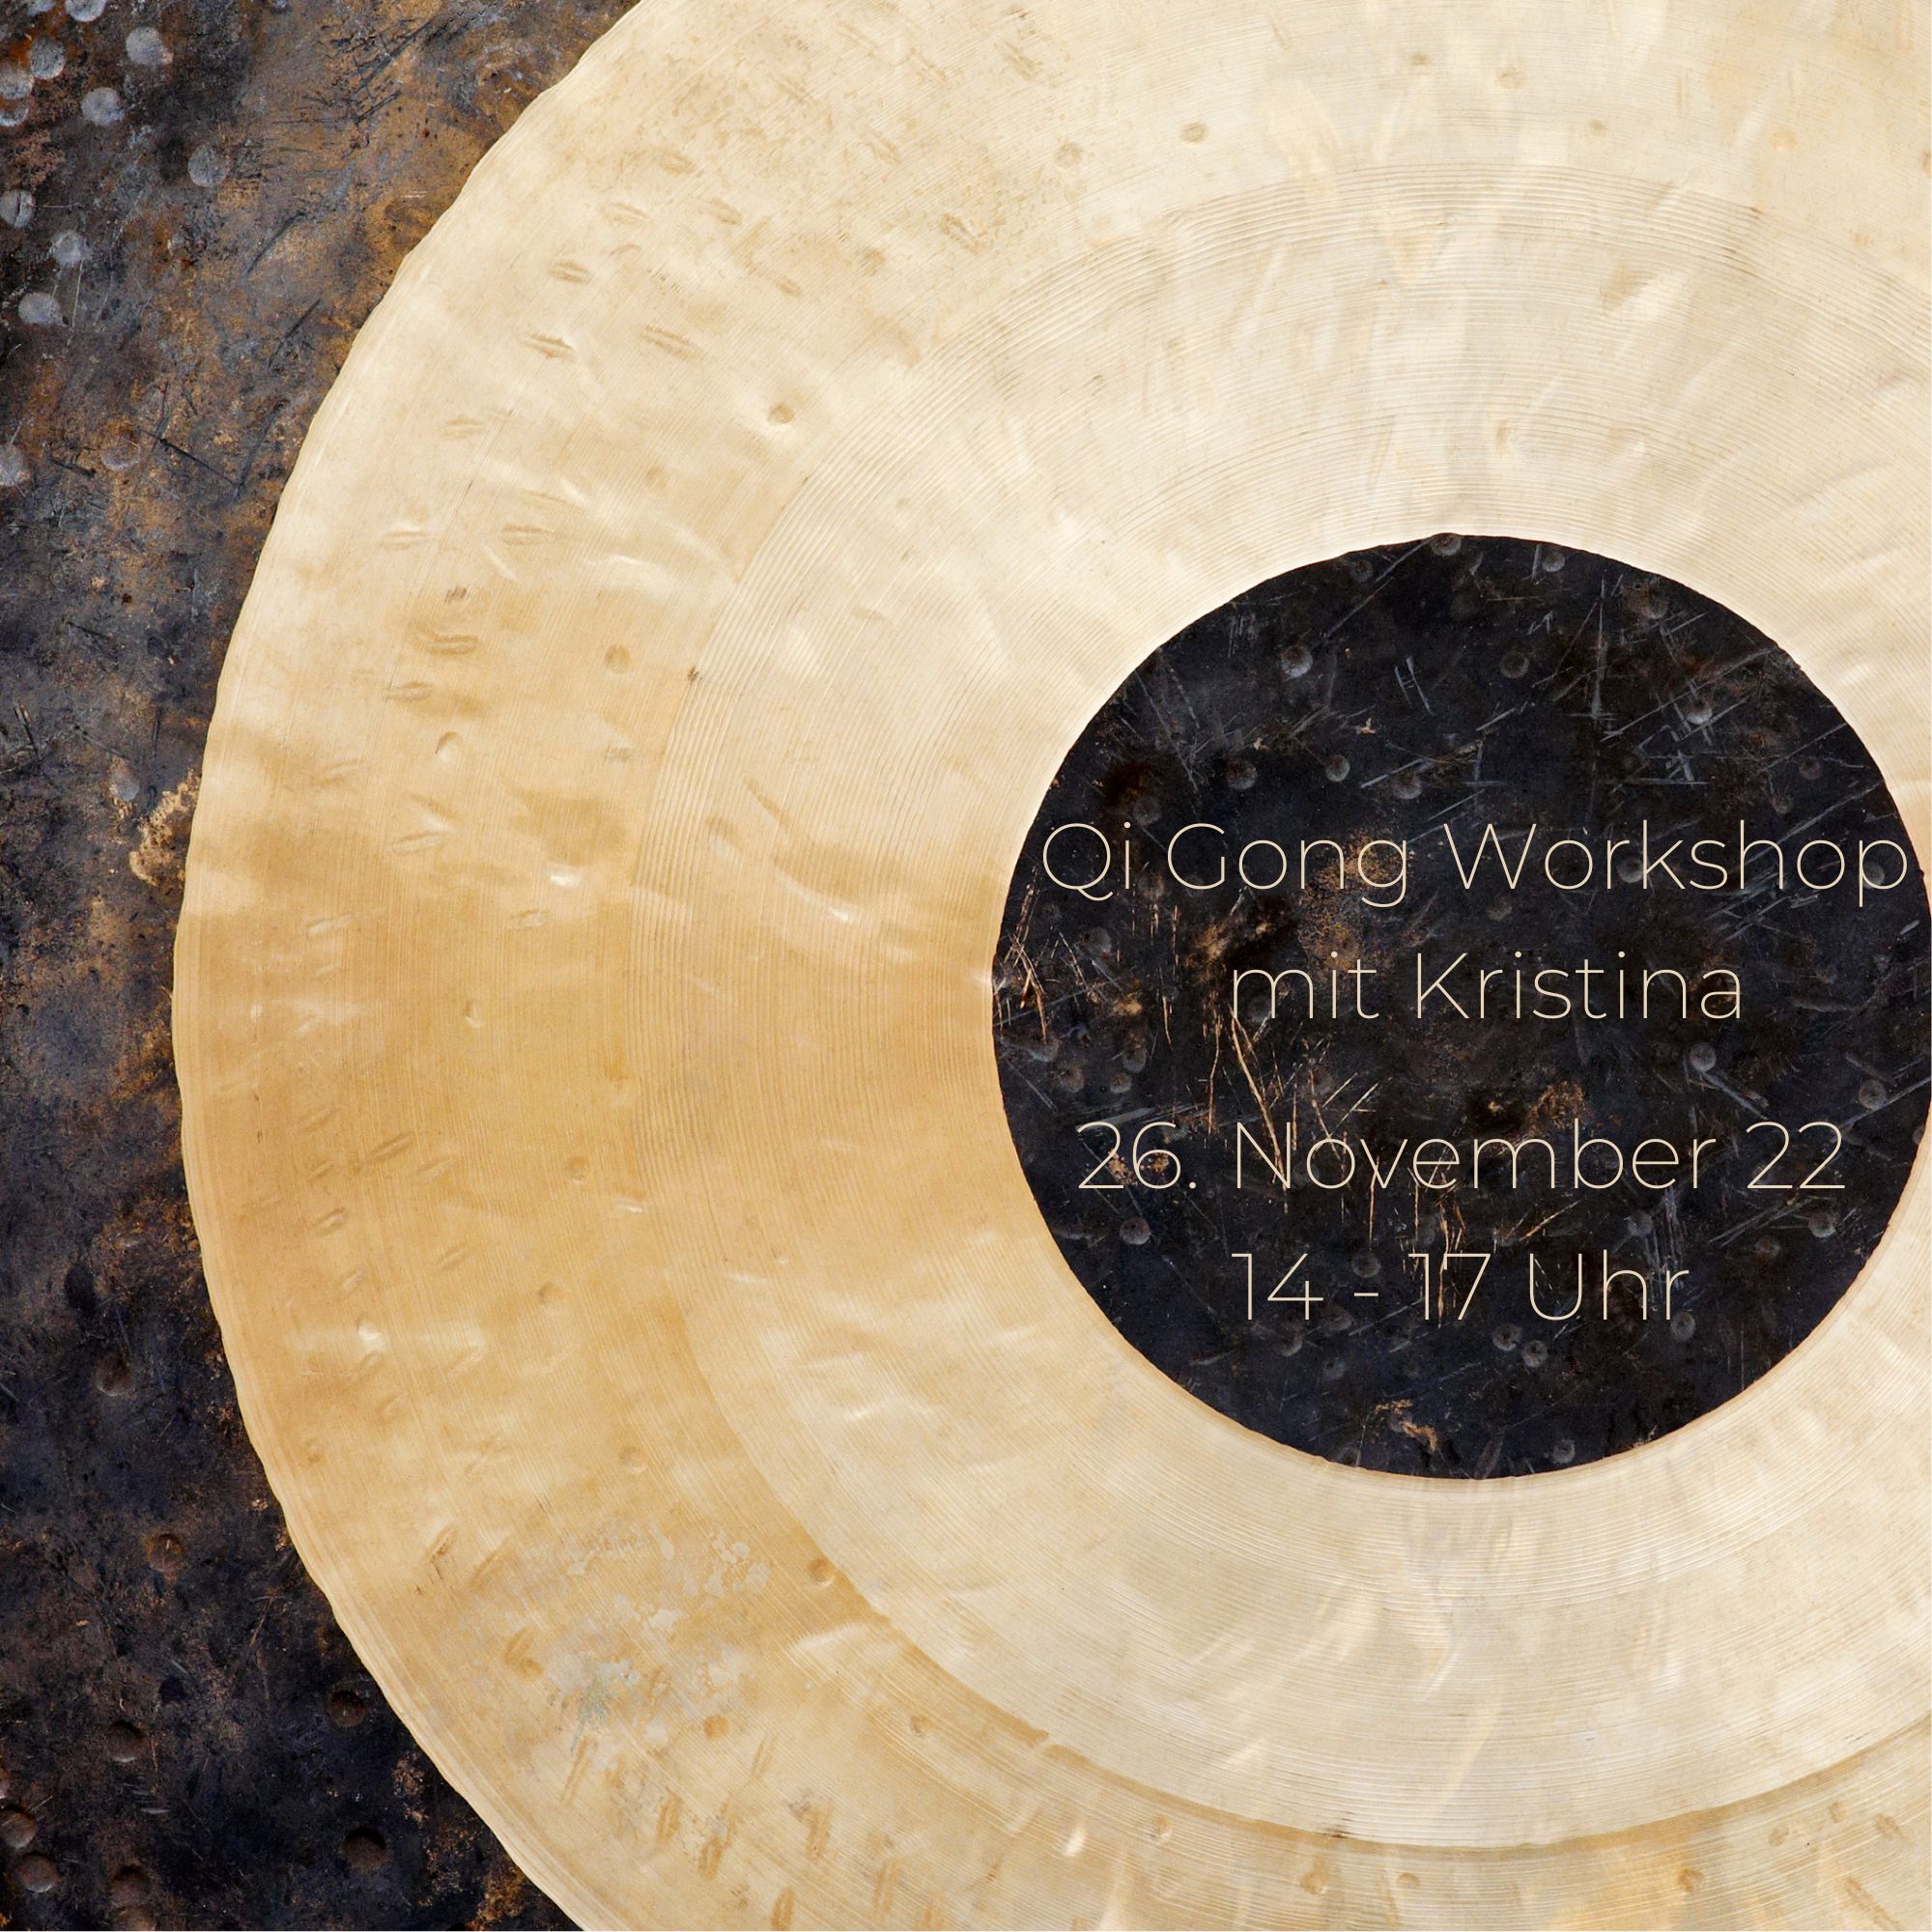 Samstag der 26. November zwischen 14 – 17 Uhr: Qi Gong Workshop mit Kristina